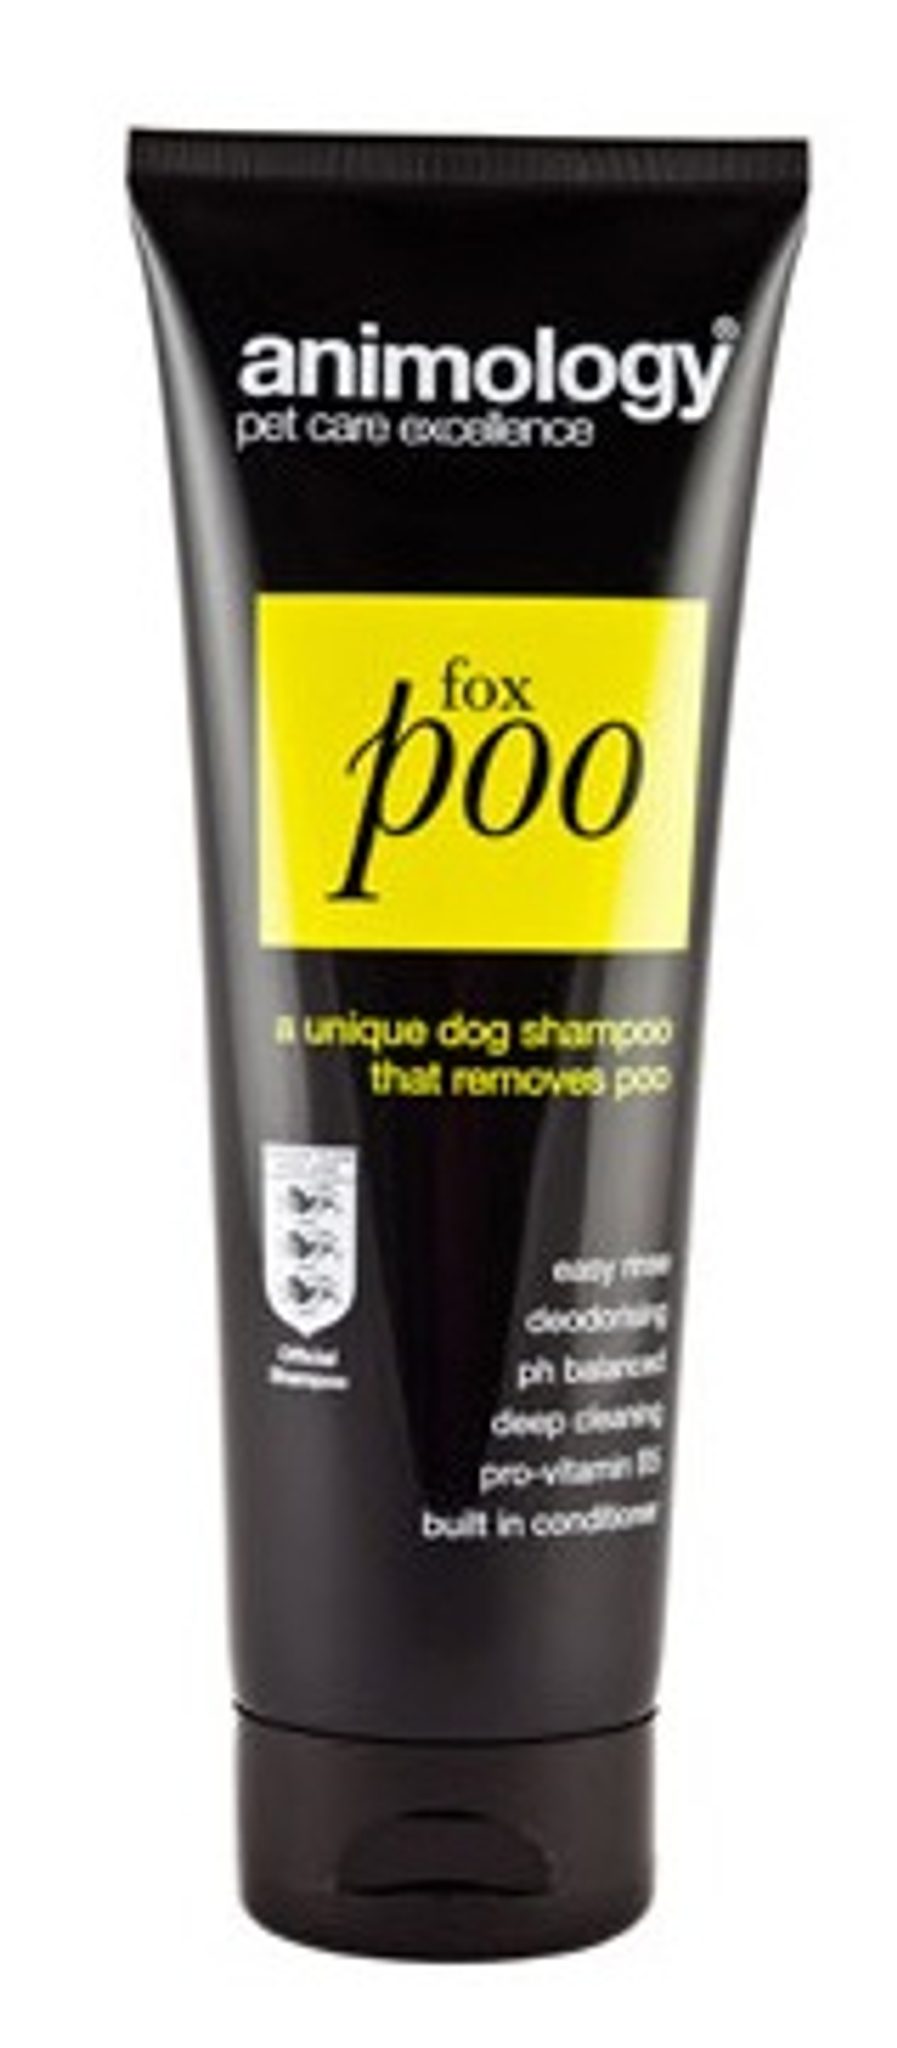 Šampón pro psy Animology FoxPoo